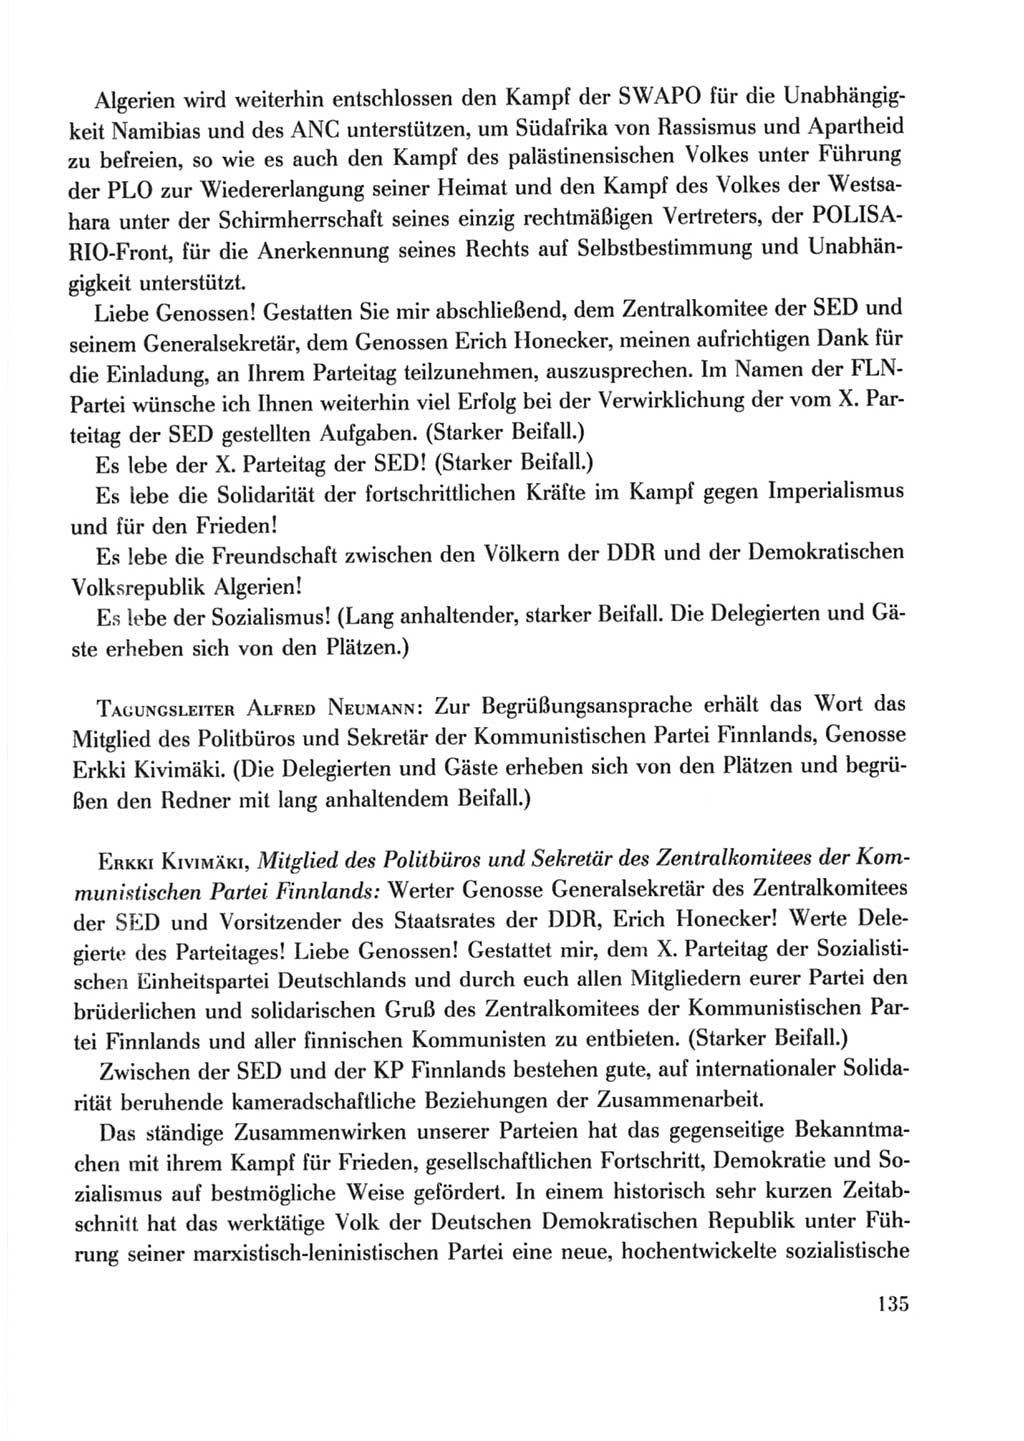 Protokoll der Verhandlungen des Ⅹ. Parteitages der Sozialistischen Einheitspartei Deutschlands (SED) [Deutsche Demokratische Republik (DDR)] 1981, Band 2, Seite 135 (Prot. Verh. Ⅹ. PT SED DDR 1981, Bd. 2, S. 135)